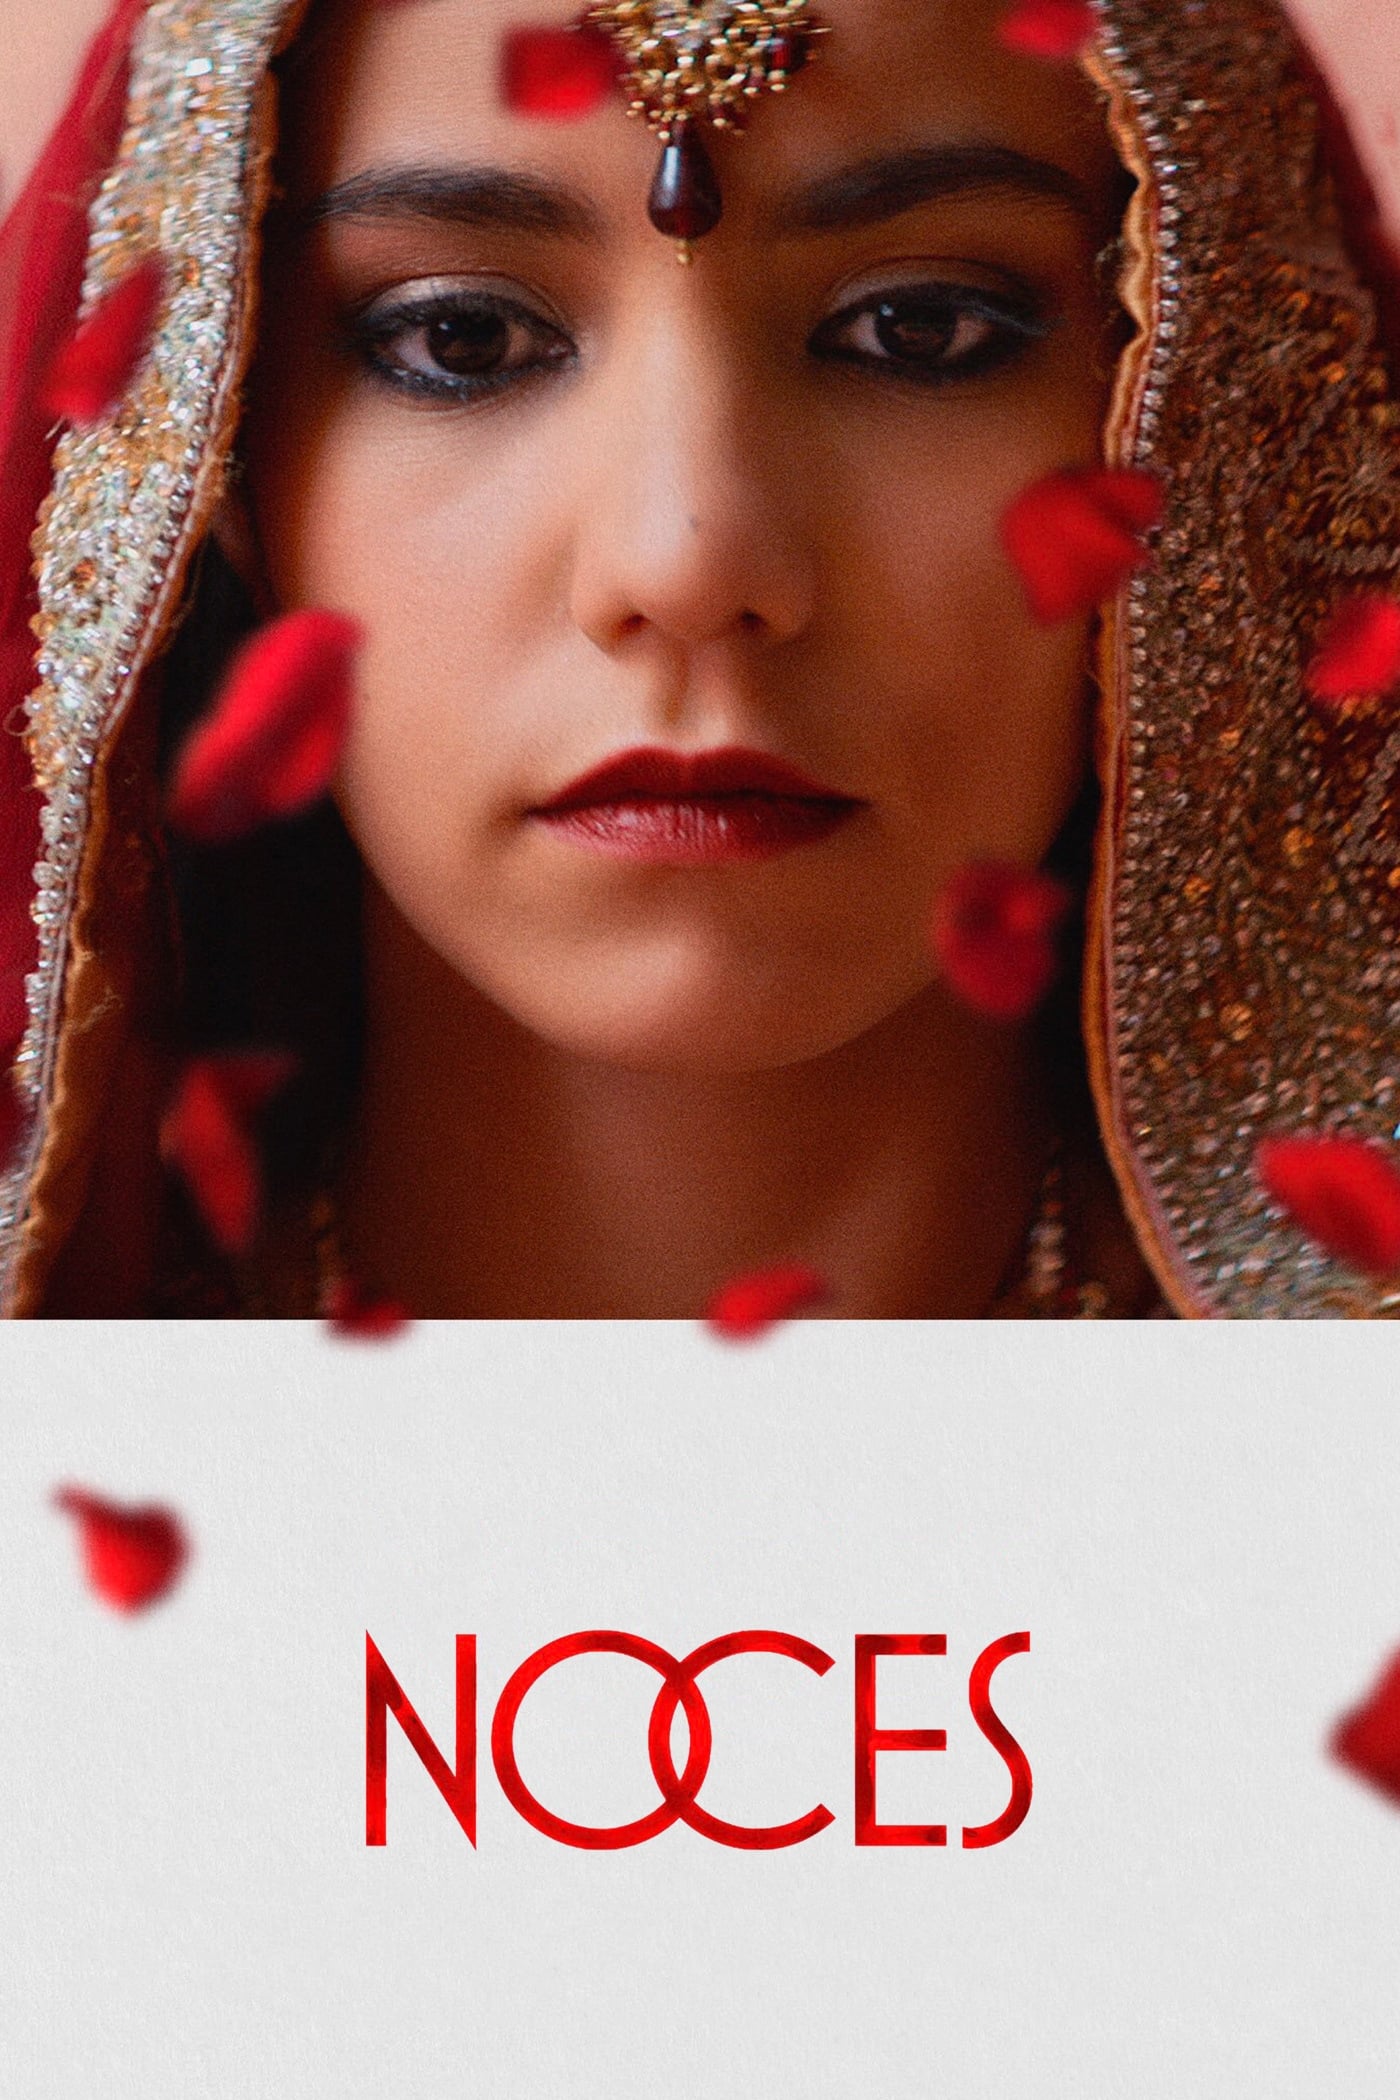 Noces [Sub-ITA] (2016)